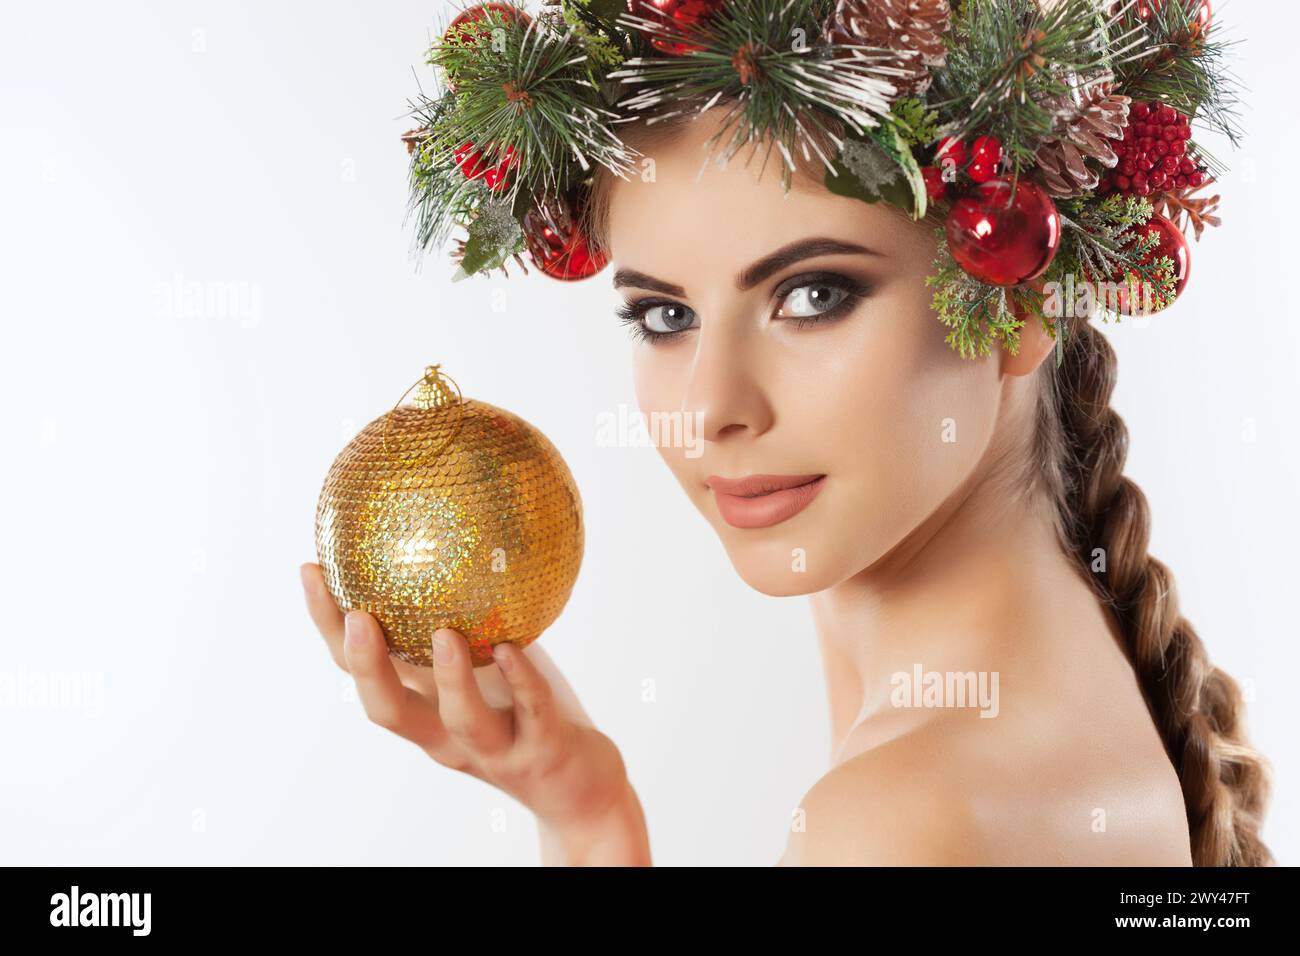 Une jolie jeune femme tient dans sa main une boule de Noël dorée, sur sa tête une belle couronne d'épicéa avec des cônes et des boules. Concept du nouvel an. Banque D'Images